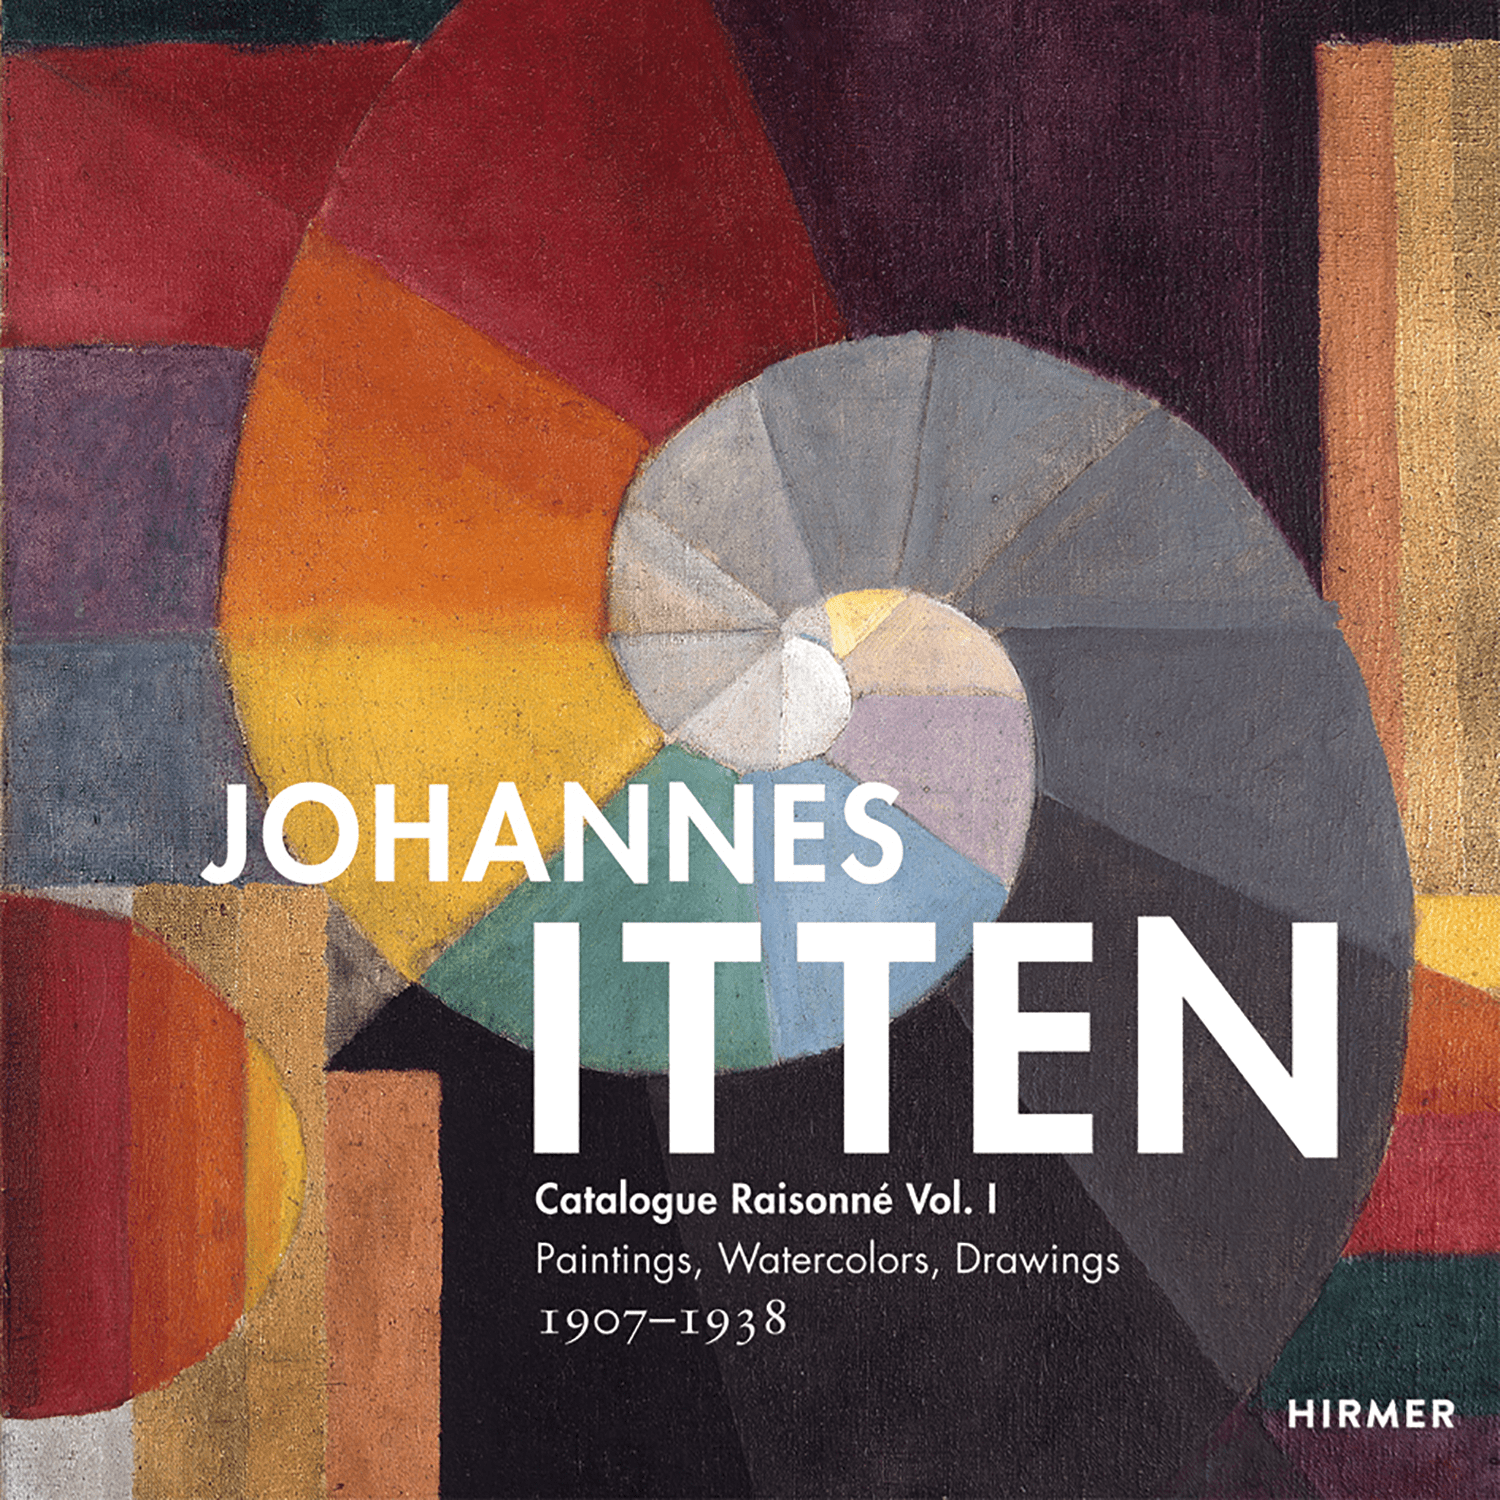 Johannes Itten - Catalogue raisonné Vol. I resmi